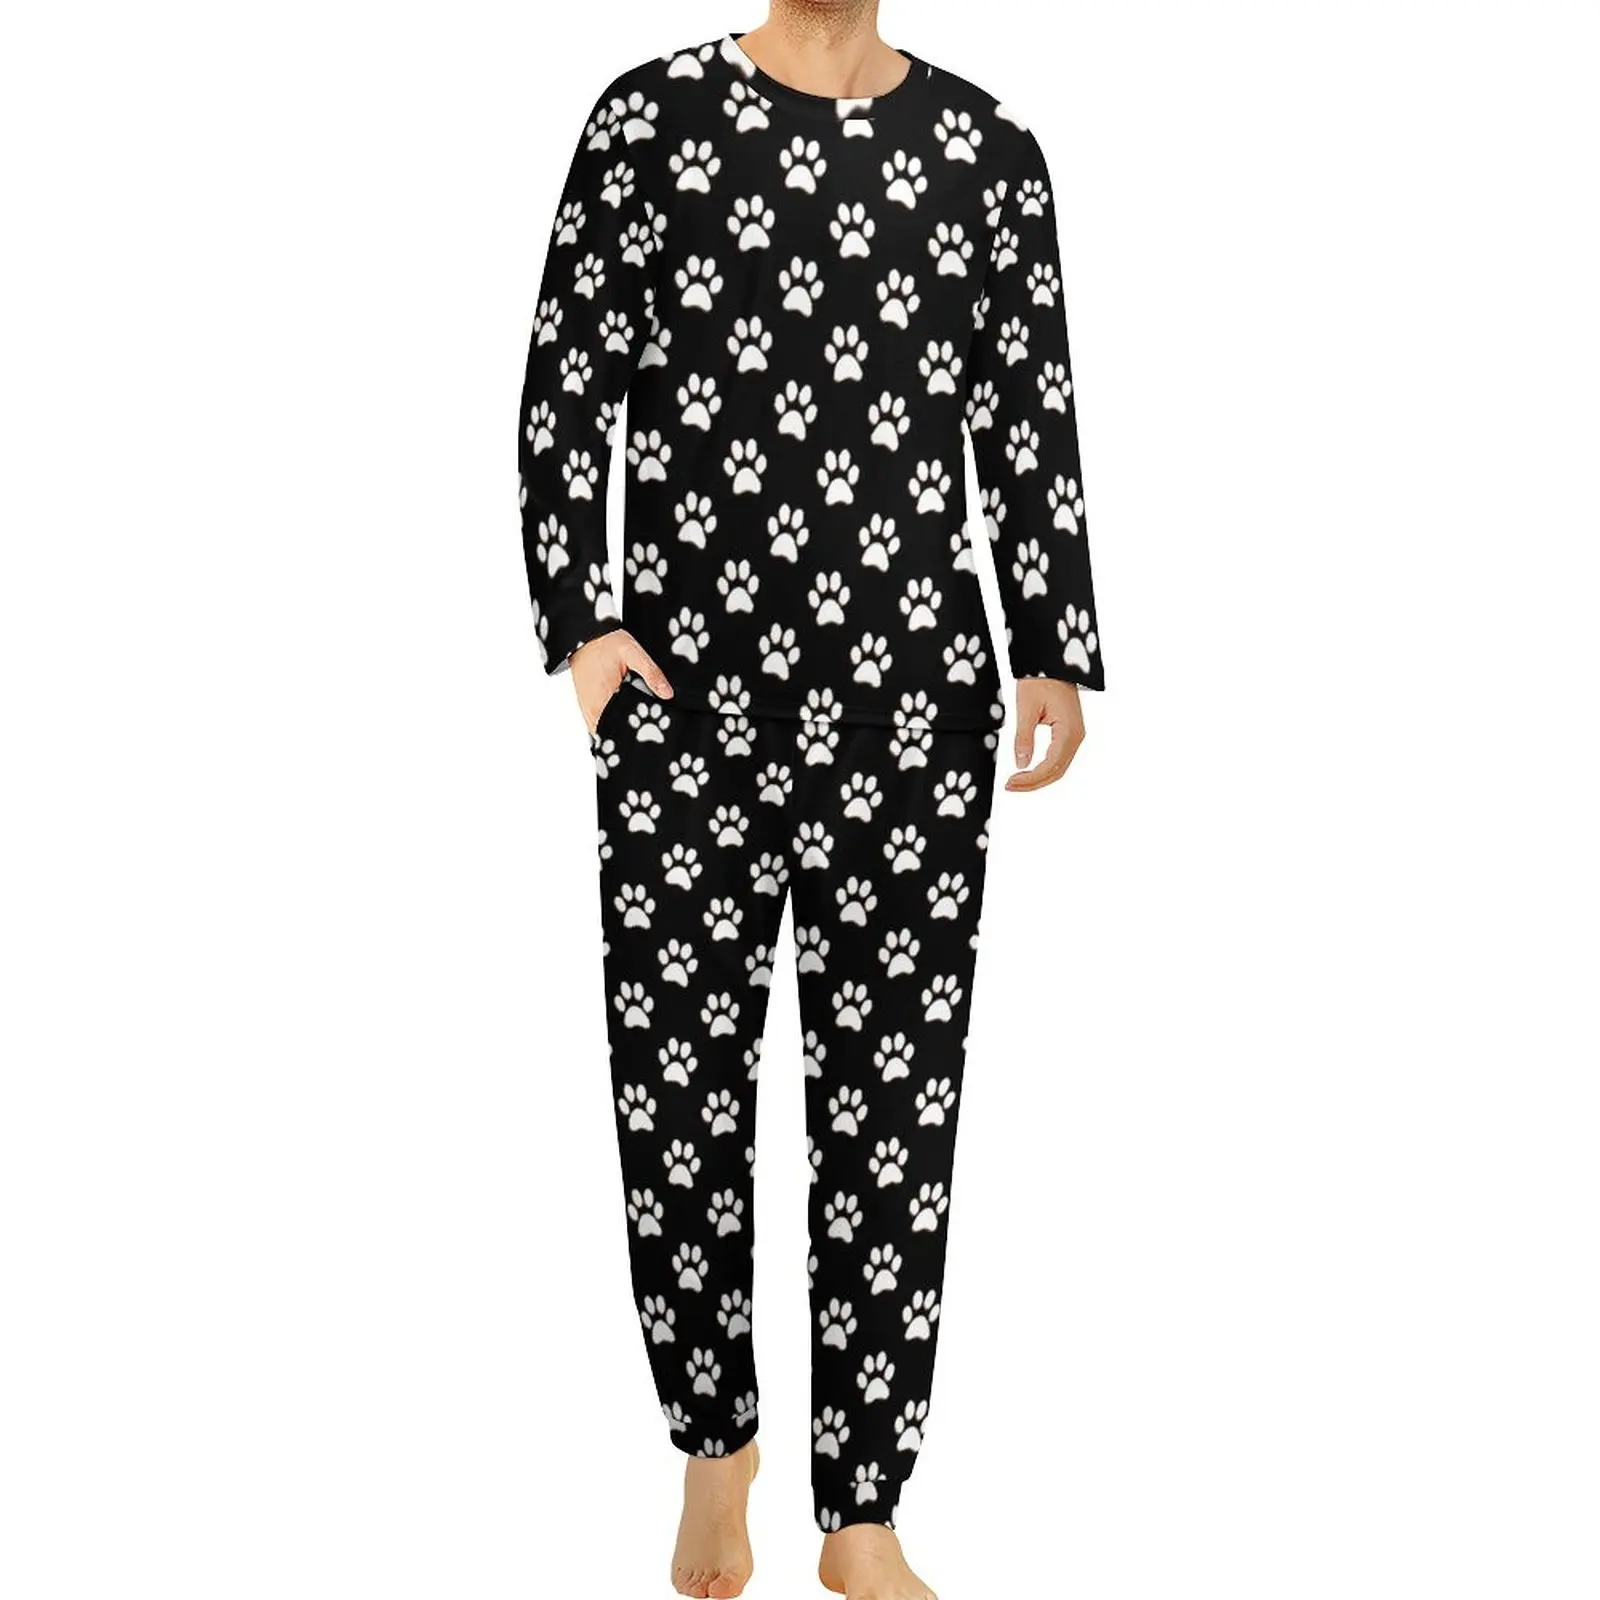 White Dog Paws Pajamas Daily Pet Lover Leisure Sleepwear Man 2 Pieces Custom Long Sleeve Kawaii Big Size Pajama Sets